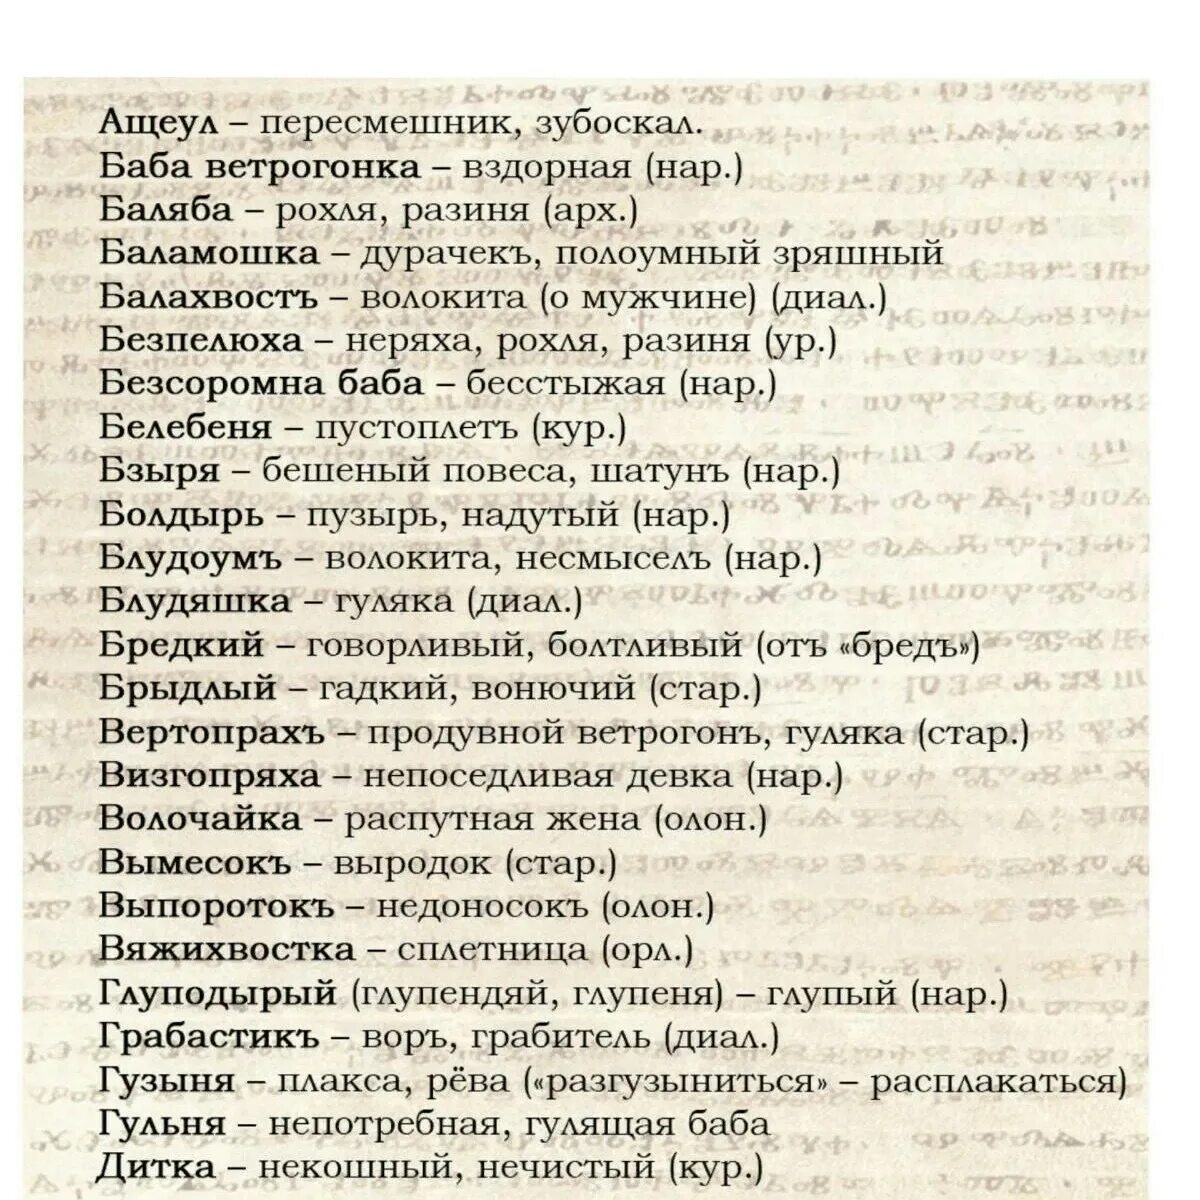 Обзывательства. Старинные ругательства. Славянские ругательства. Список всех матерных слов. Старорусские ругательства.